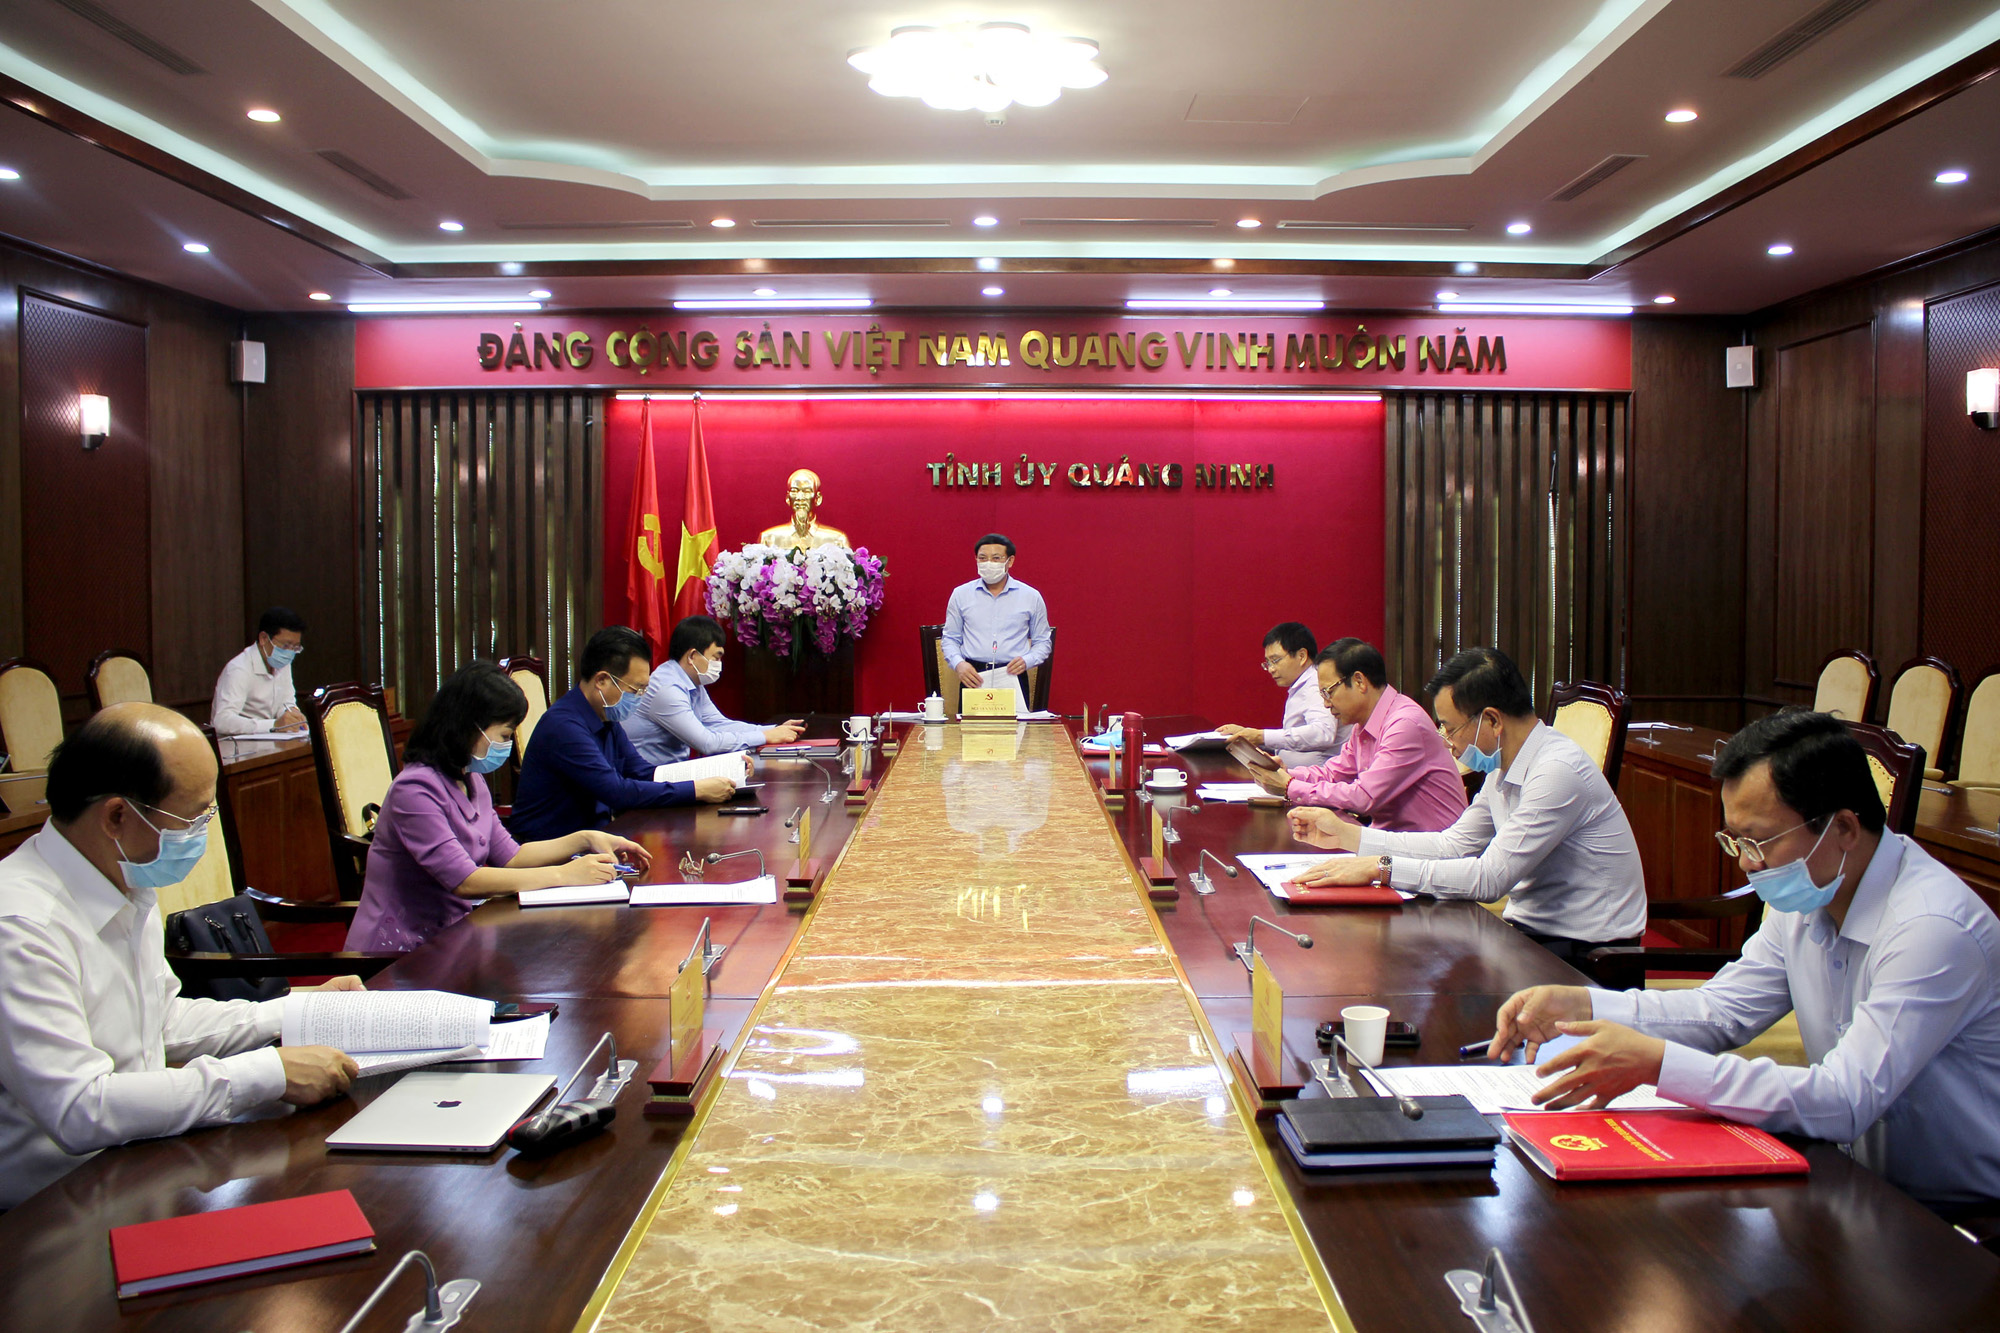 Đồng chí Nguyễn Xuân Ký, Bí thư Tỉnh ủy, Chủ tịch HĐND tỉnh, kêt luận cuộc họp.